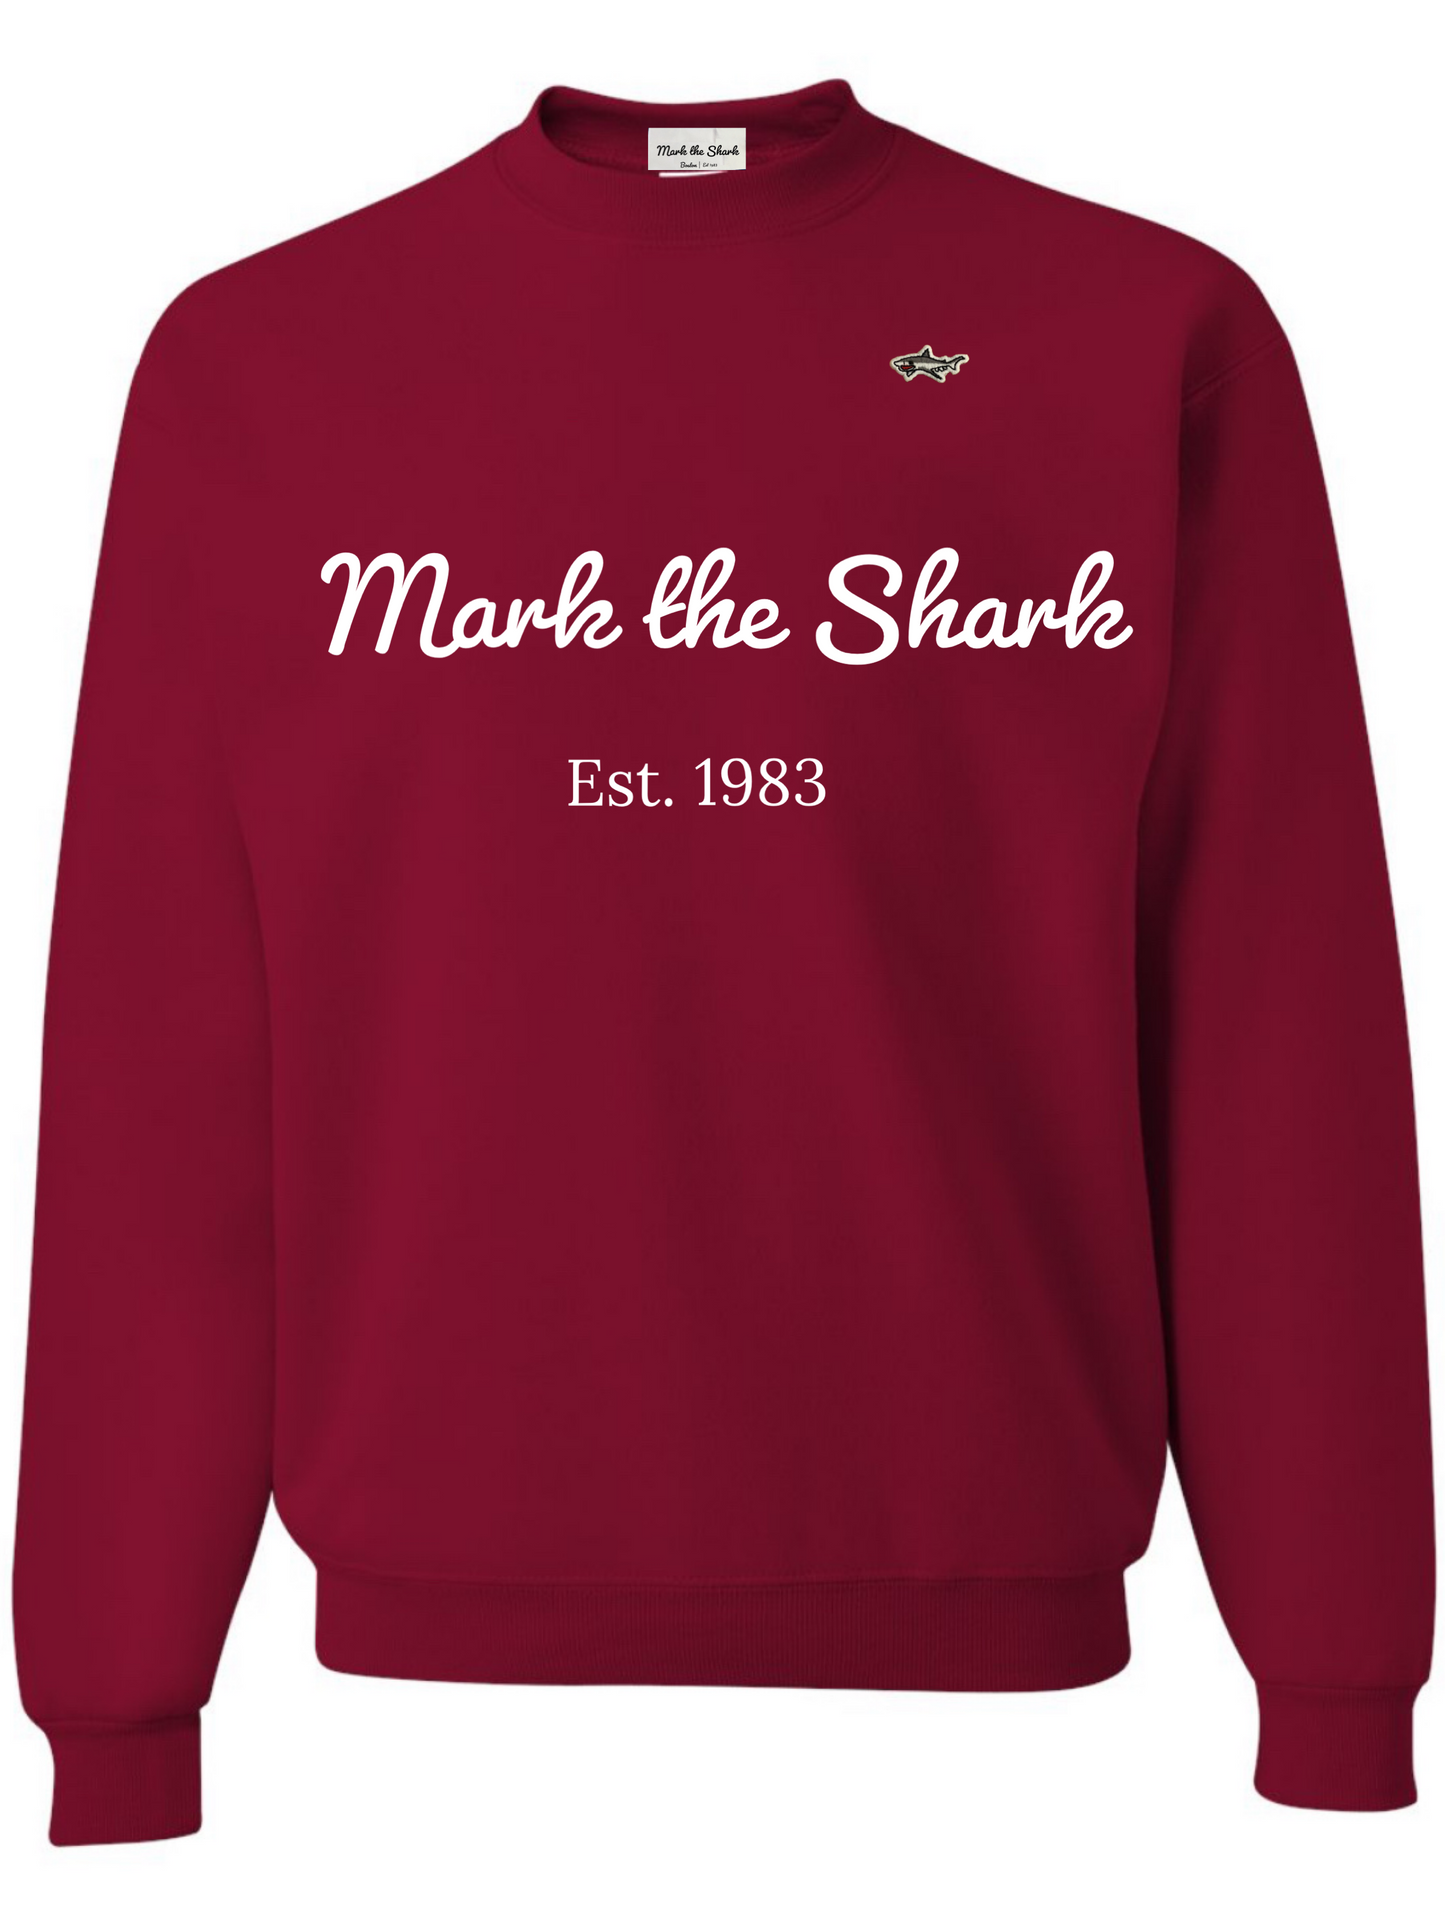 Mark the Shark Crew